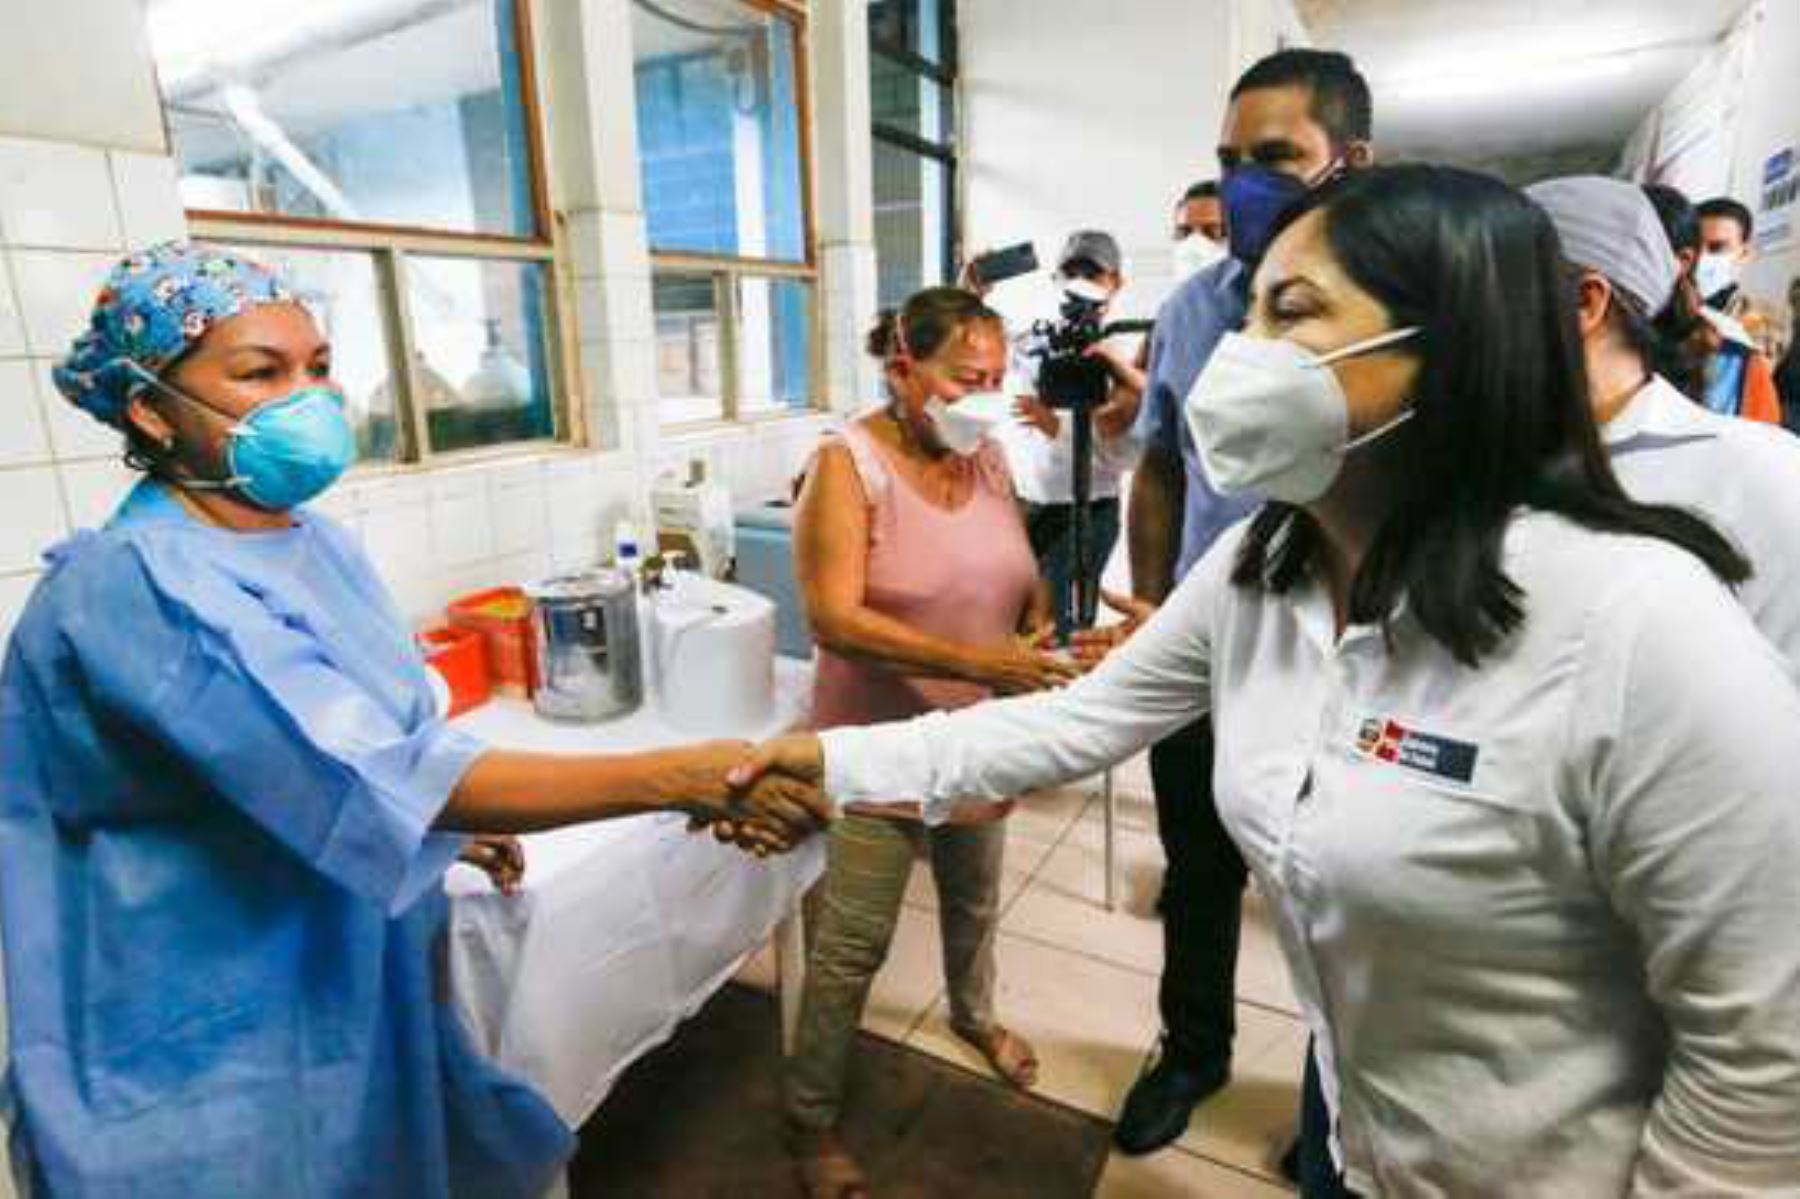 La ministra de Salud, Kelly Portalatino Ávalos, acompañada por la congresista Francis Paredes, llegó a la ciudad de Pucallpa, región Ucayali. Foto: Minsa